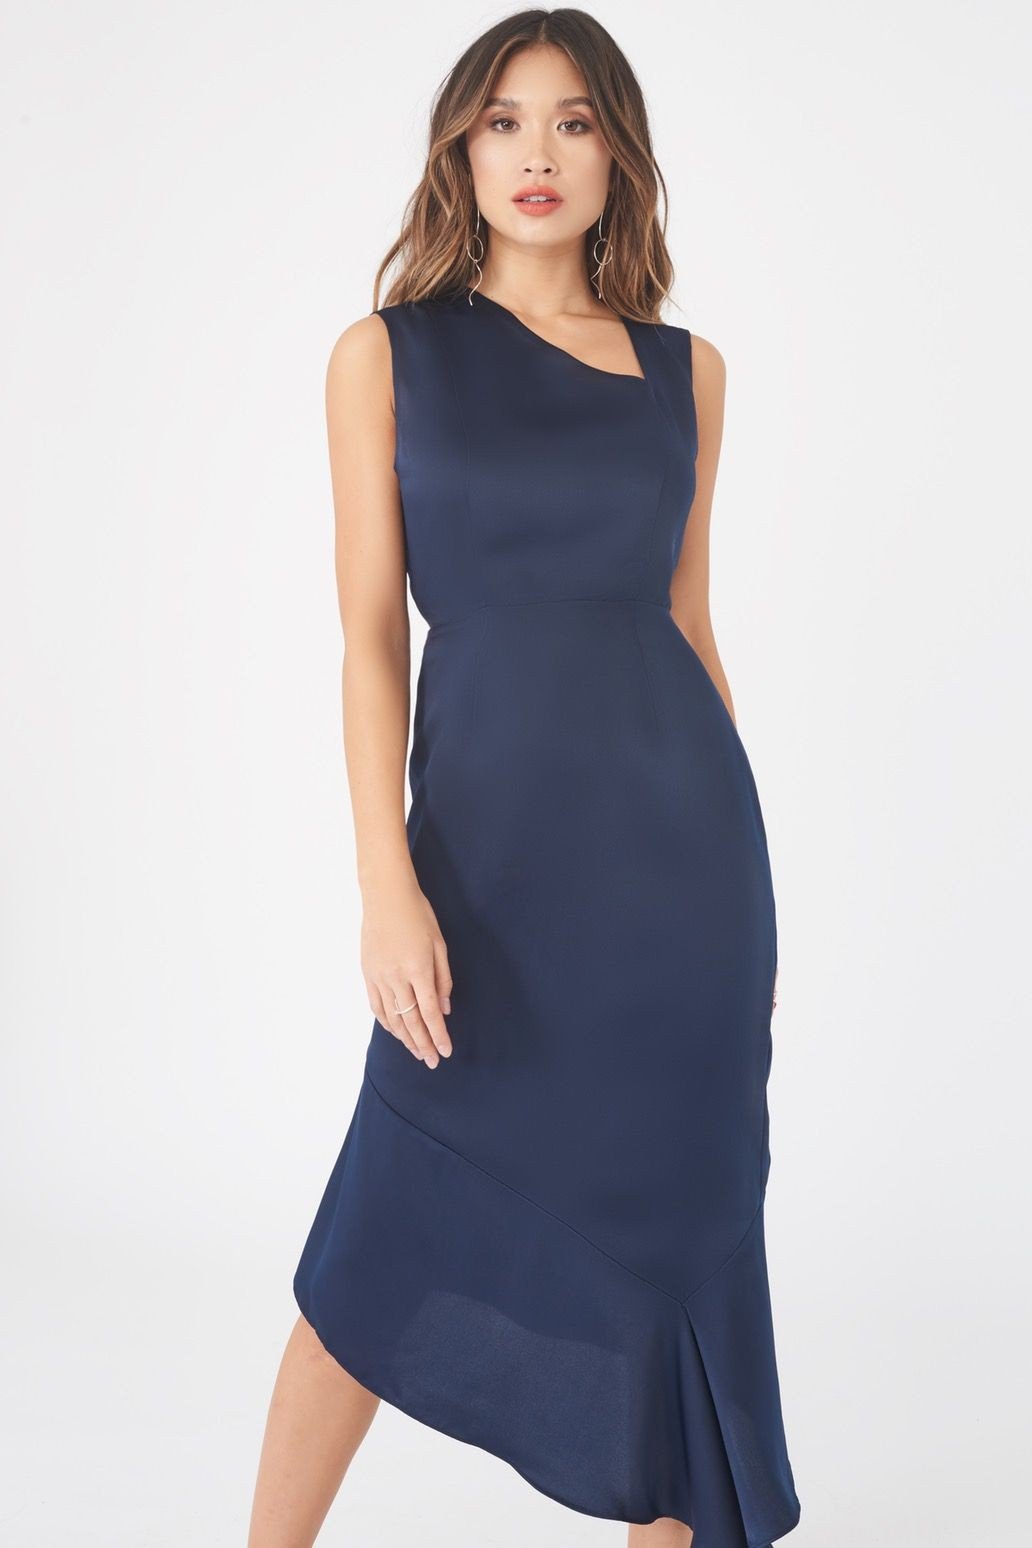 Lavish Alice Navy Blue Satin Dress - FINAL SALE